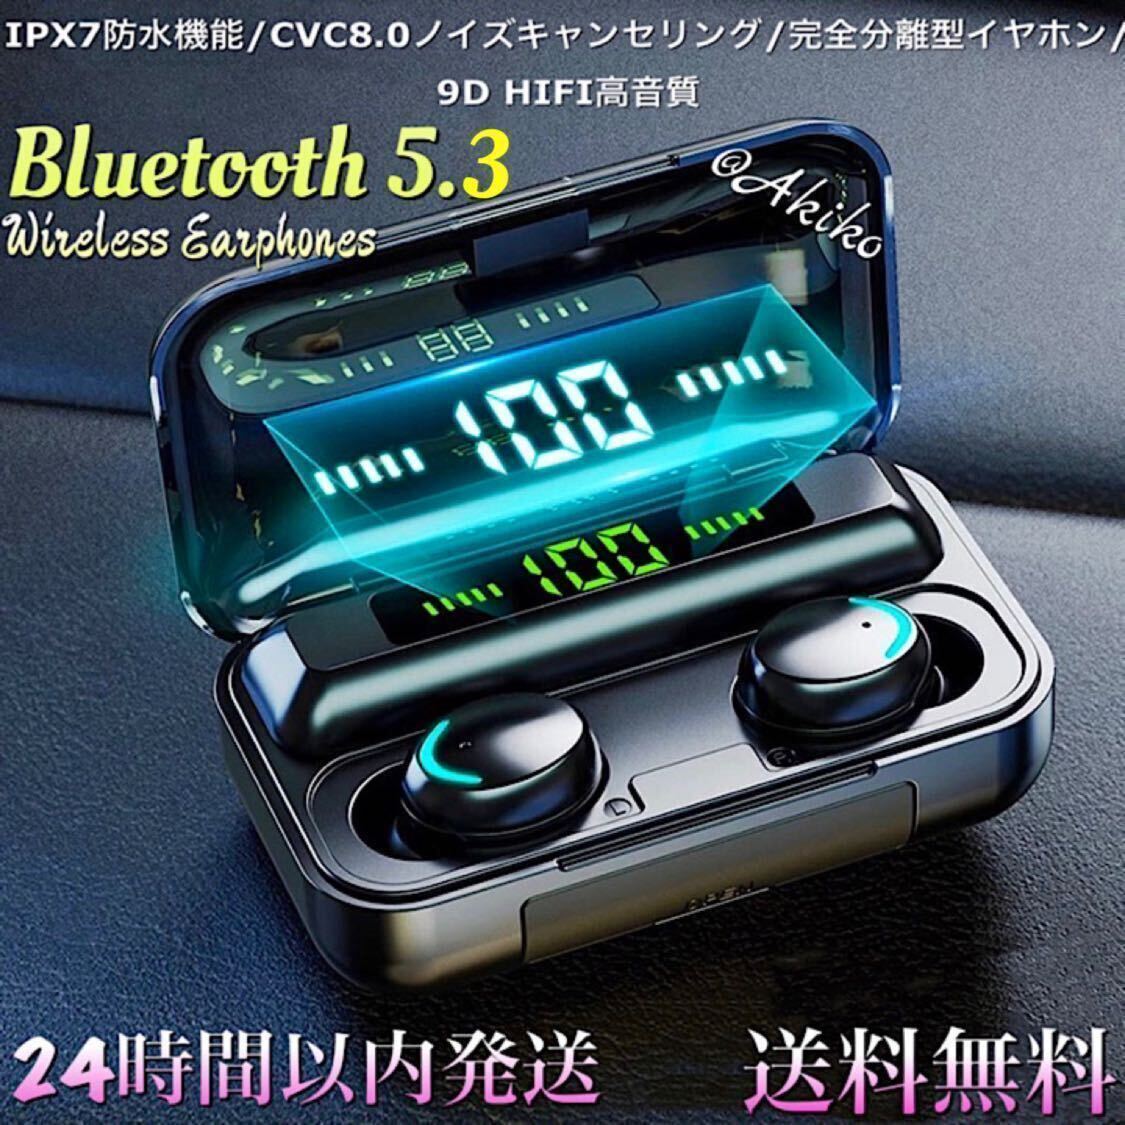 Bluetooth 5.3ワイヤレスイヤホン、バッテリー大容量2200mAh 防水!! iOS アンドロイド対応